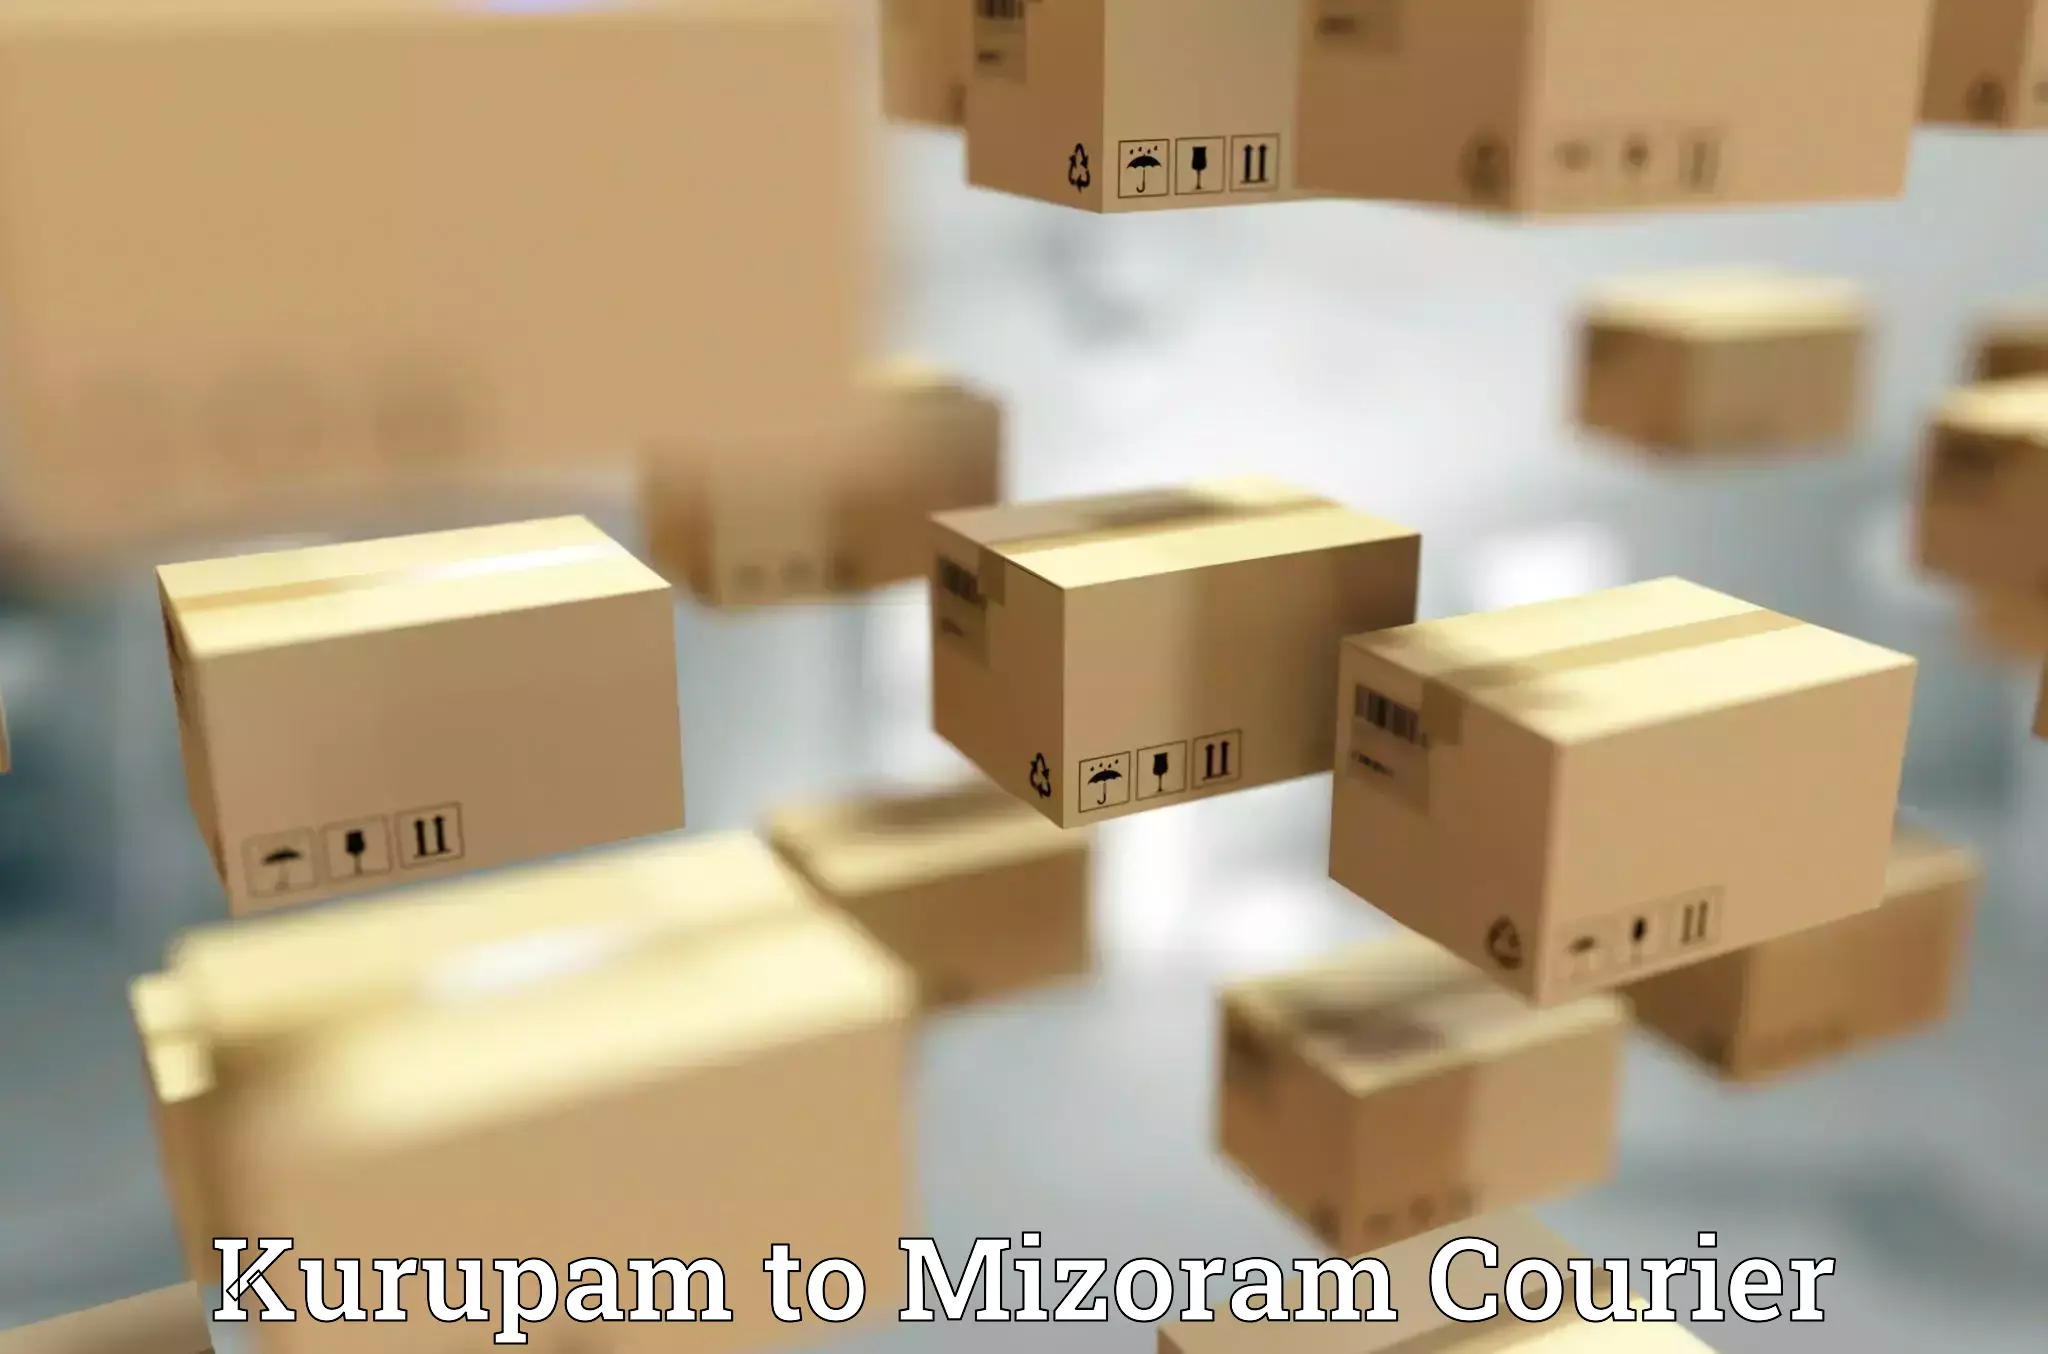 Easy return solutions Kurupam to Mizoram